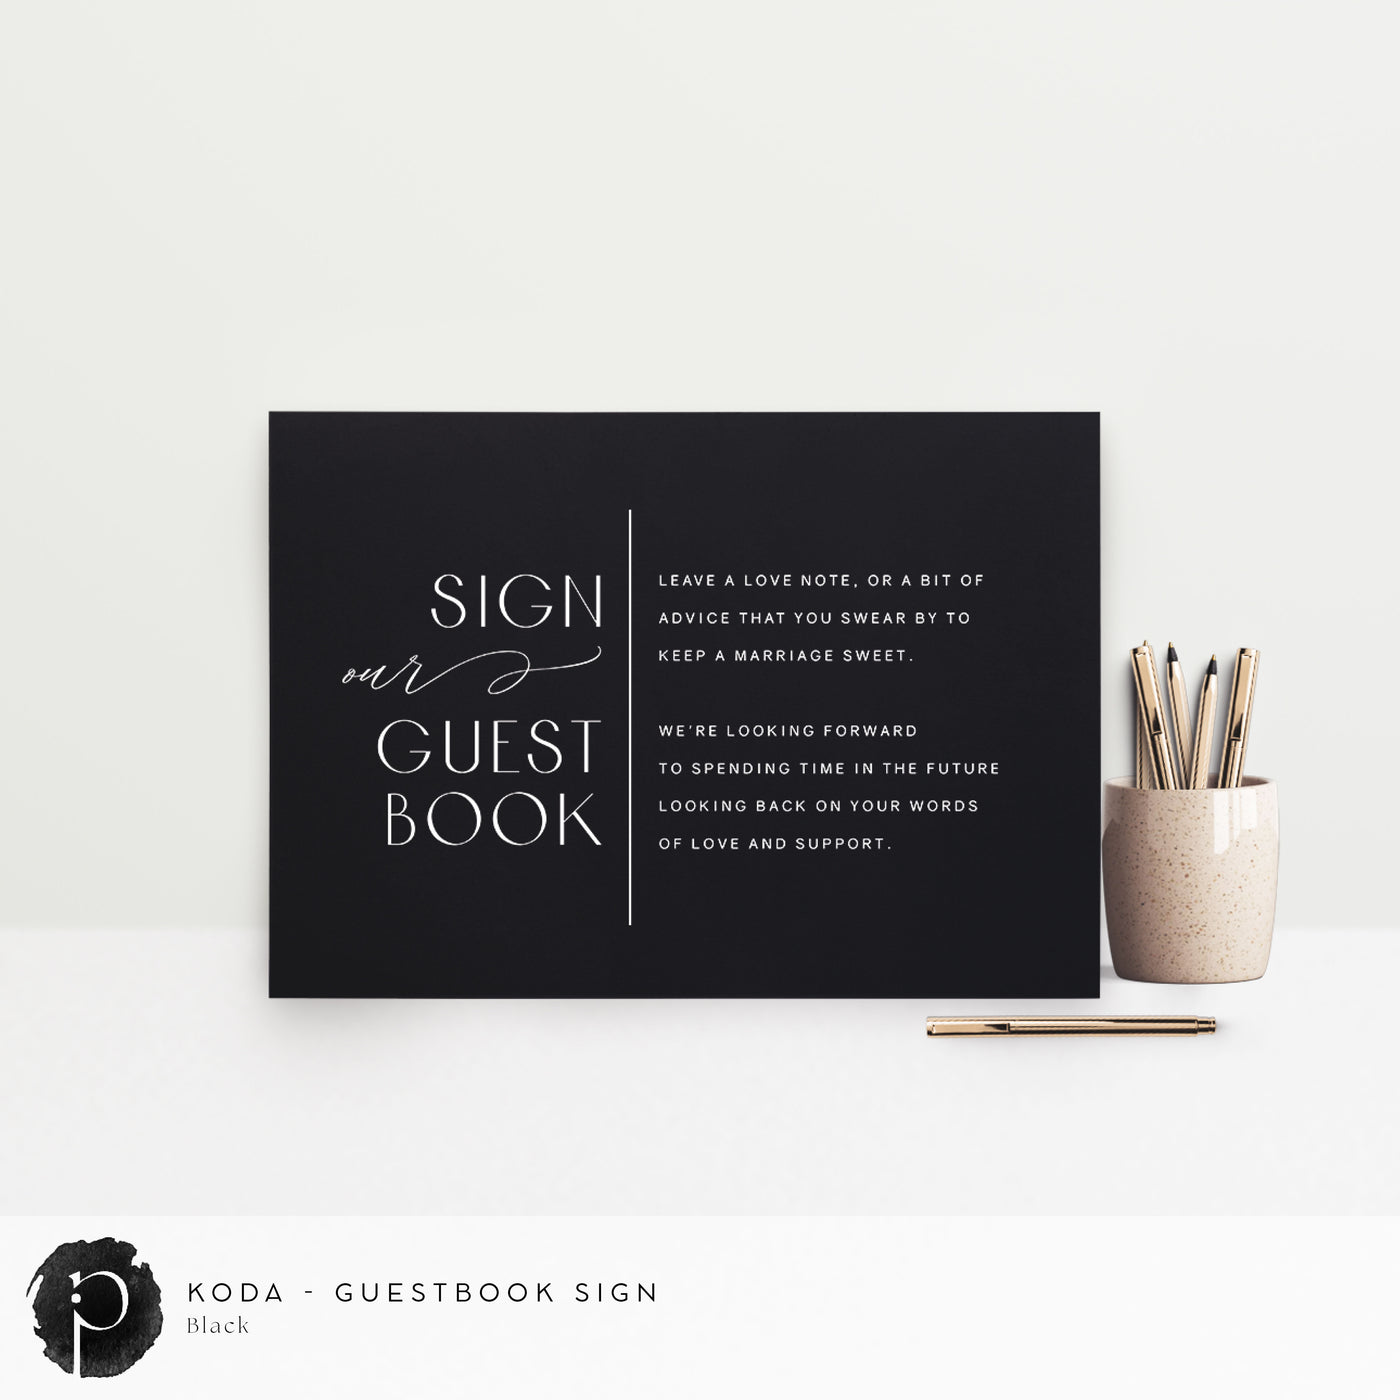 Koda - Guestbook Sign